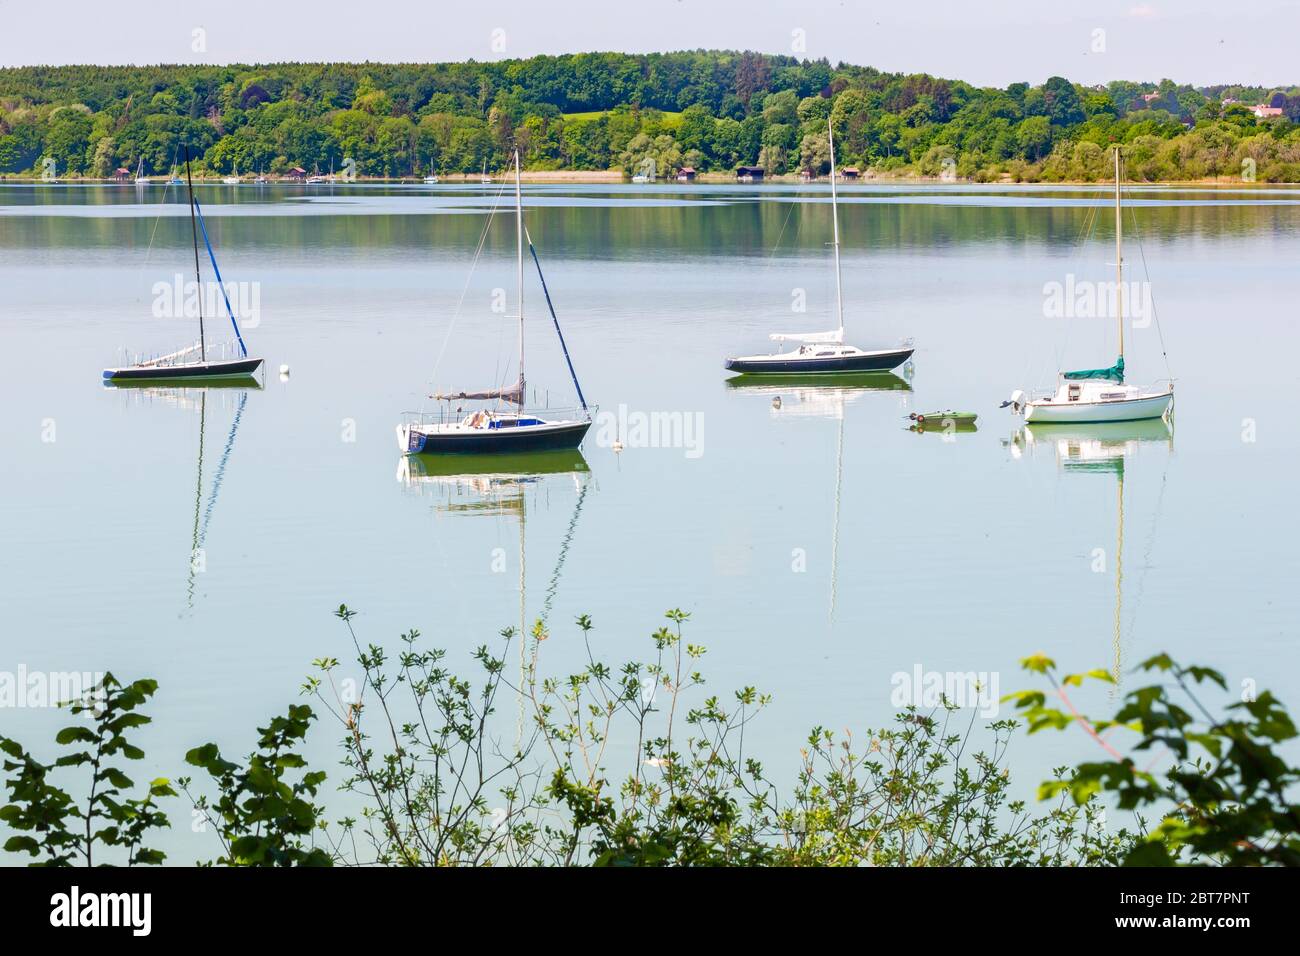 Idyillische Landschaft mit vier Segelbooten. Blätter von Büschen im Vordergrund. Aufgenommen am Ammersee. Beliebtes Touristenziel. Stockfoto